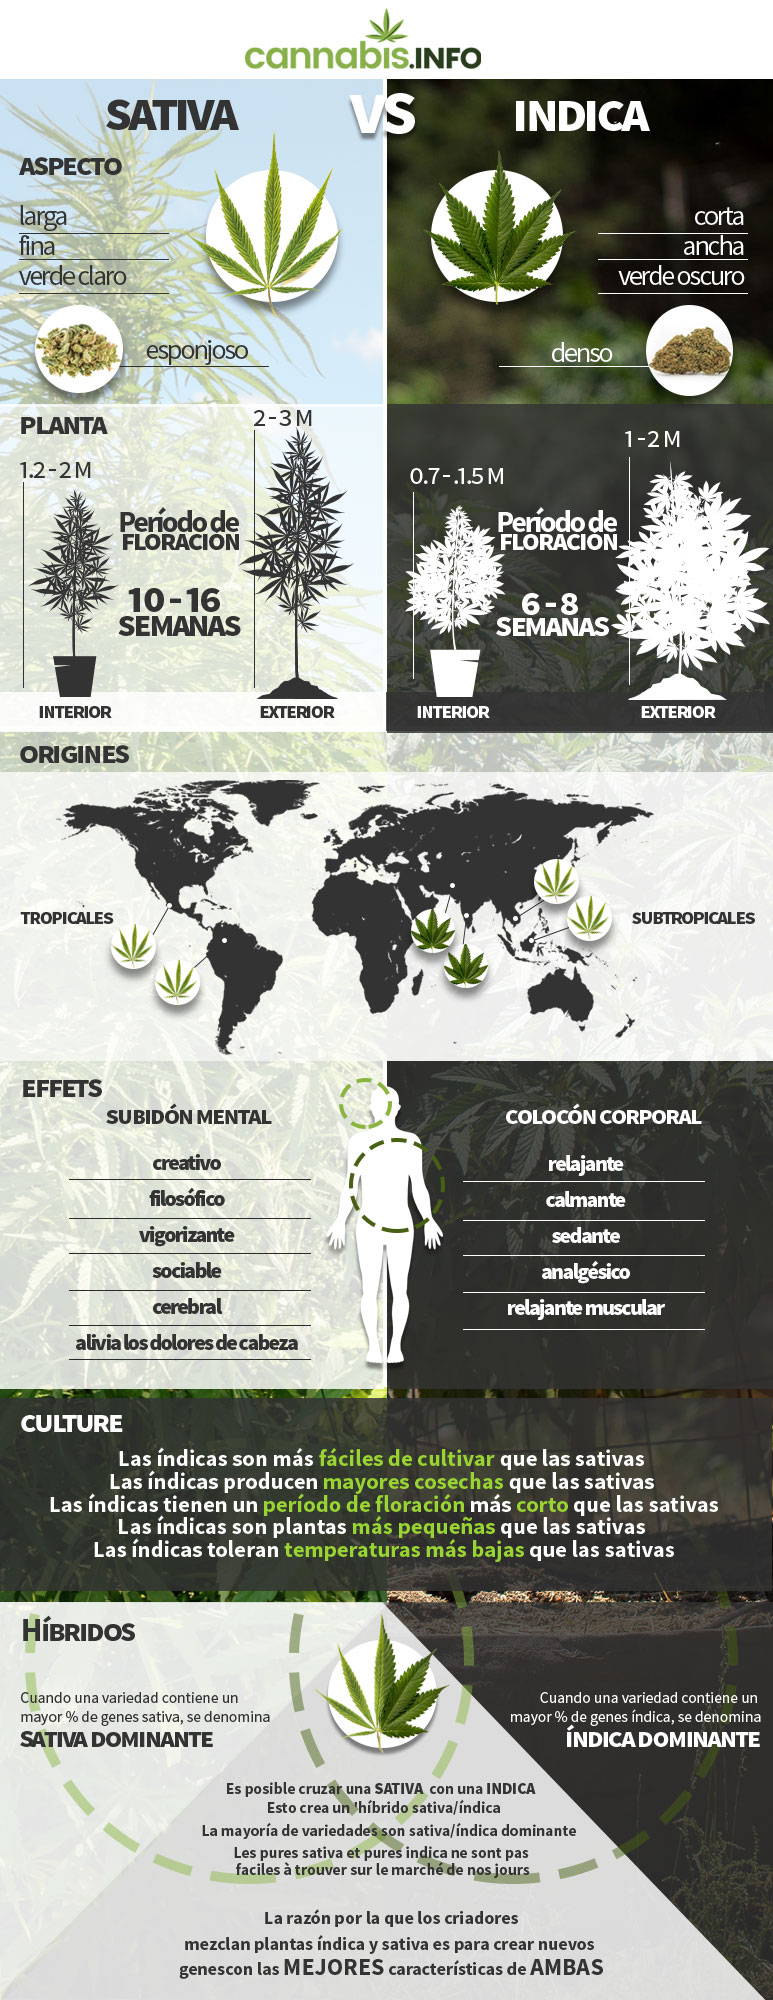 Infografía: diferencias cannabis sativa y índica